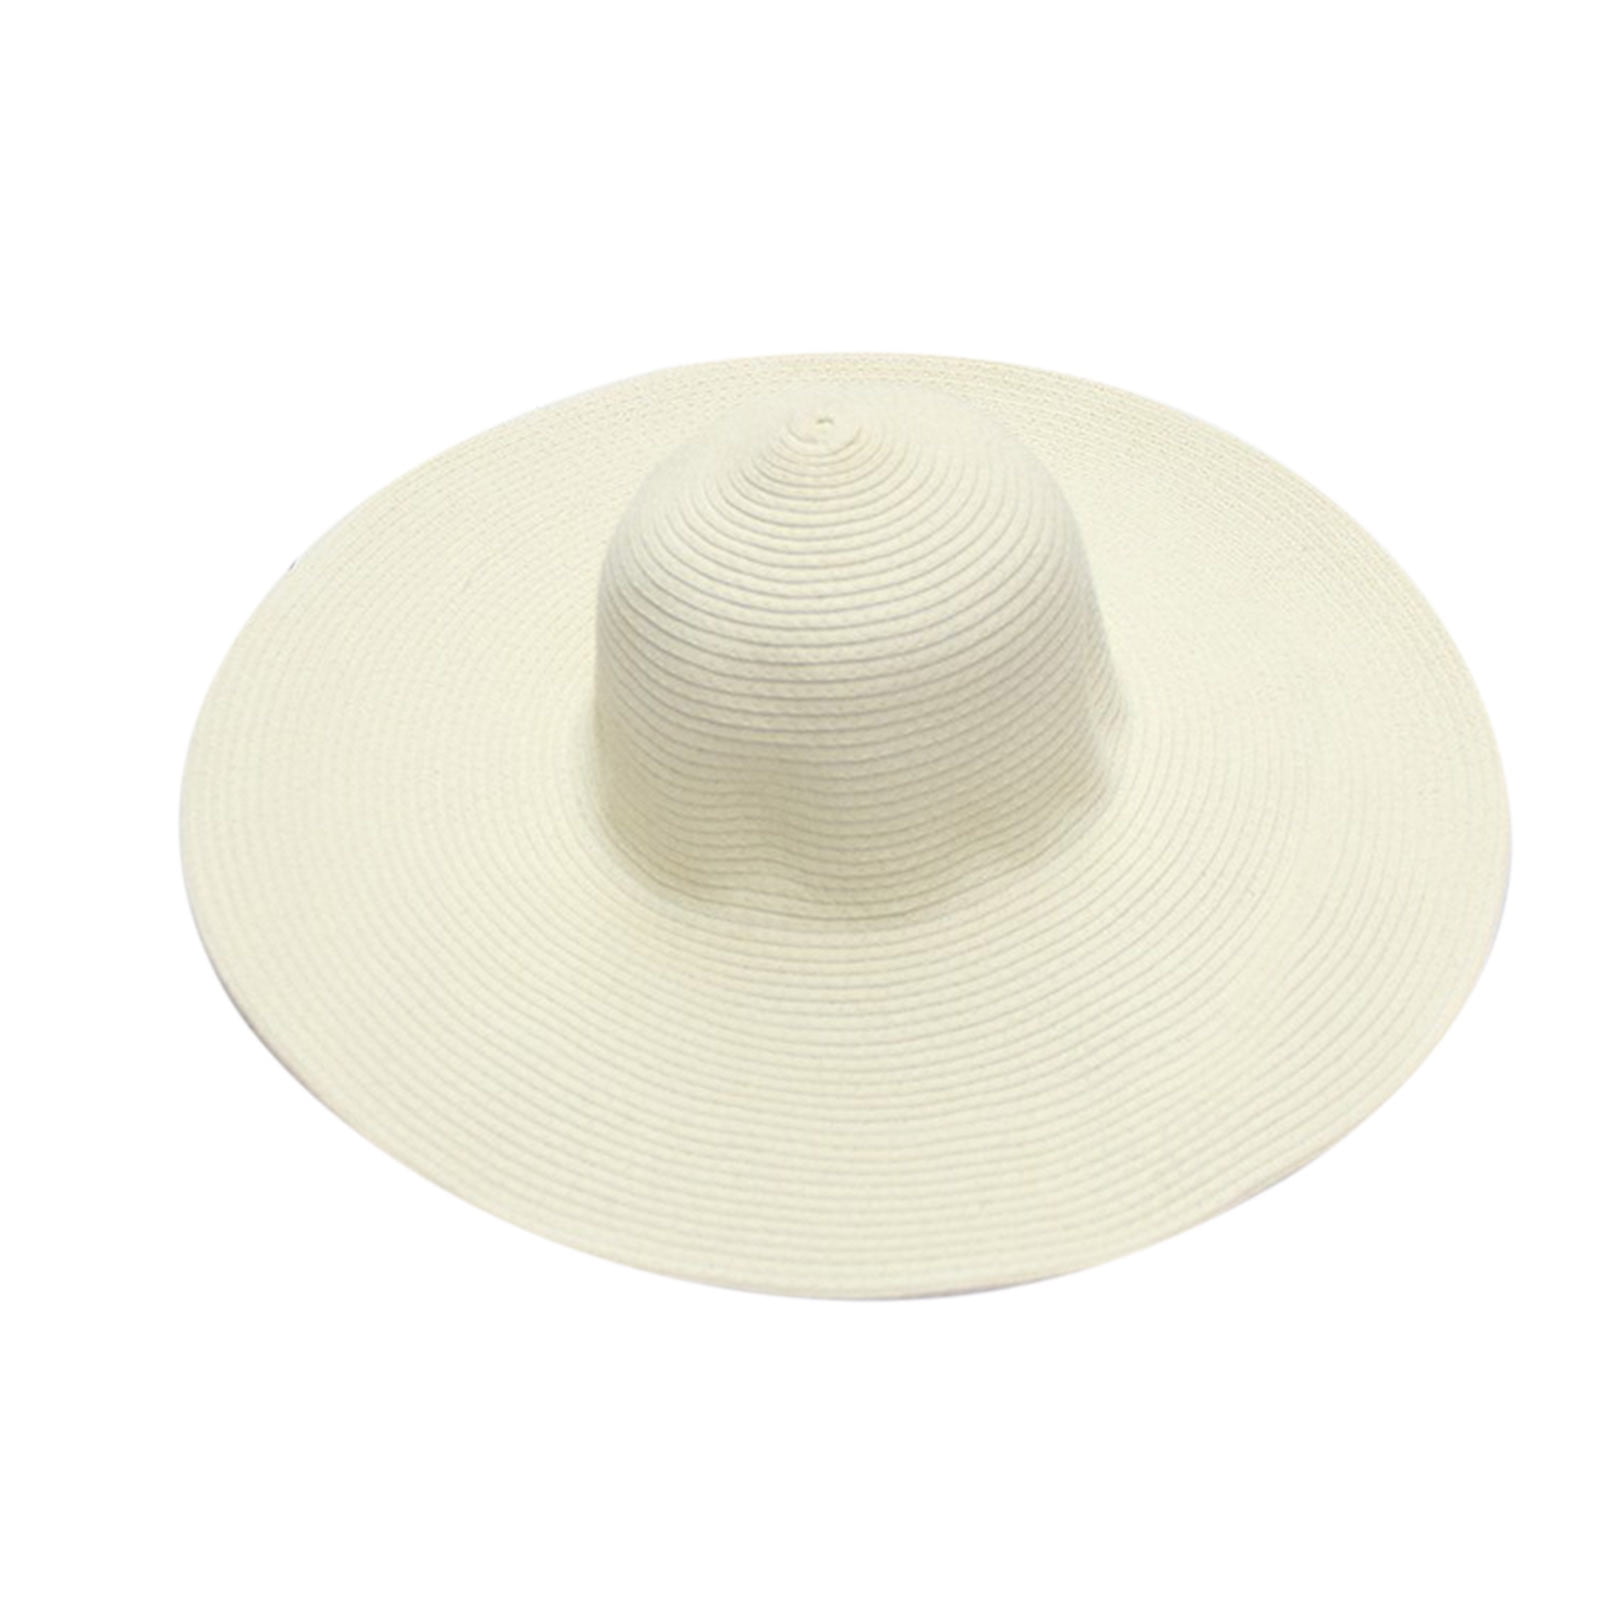 LBECLEY Wide Hats for Women Summer Hats for Women Wide Bongrace Women Straw  Beach Hat Little Sun Cap Foldable Ladies Hats Foldable Beach Hats for Women  Hot Pink One Size 